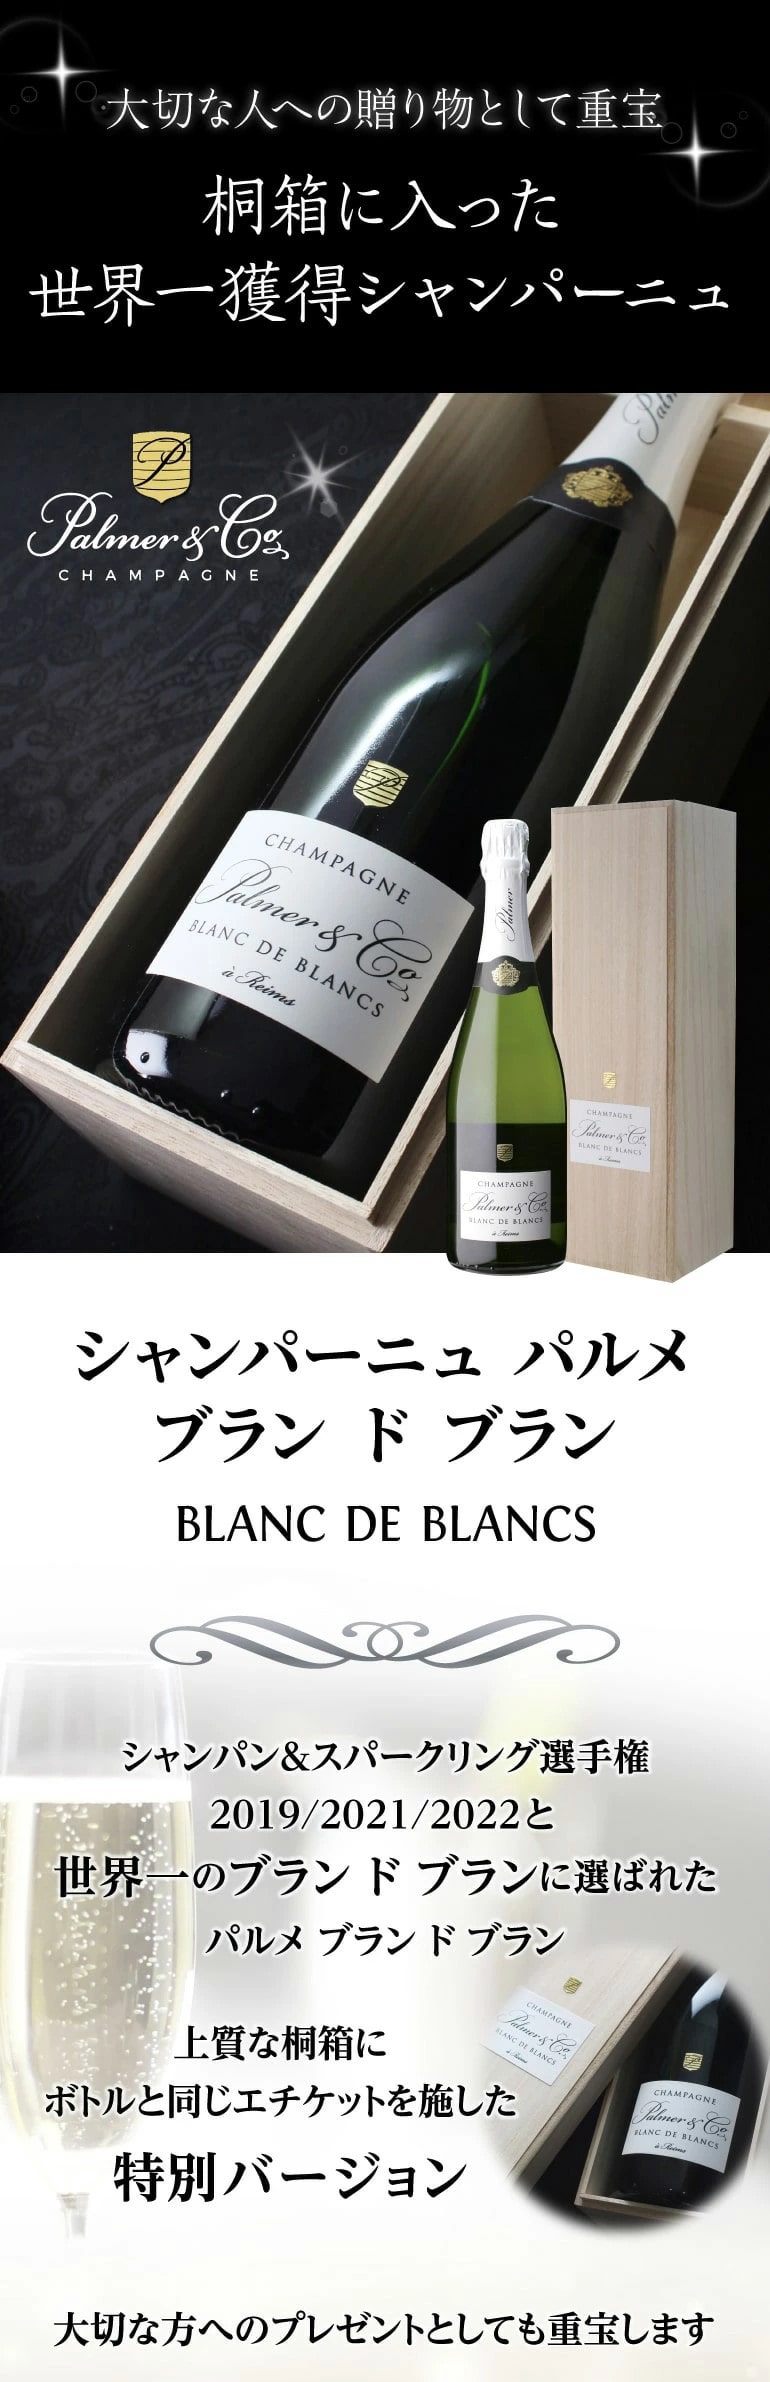 シャンパン パルメ ブラン ド ノワール 正規品 750ml ヴァレ ド ラ マルヌ